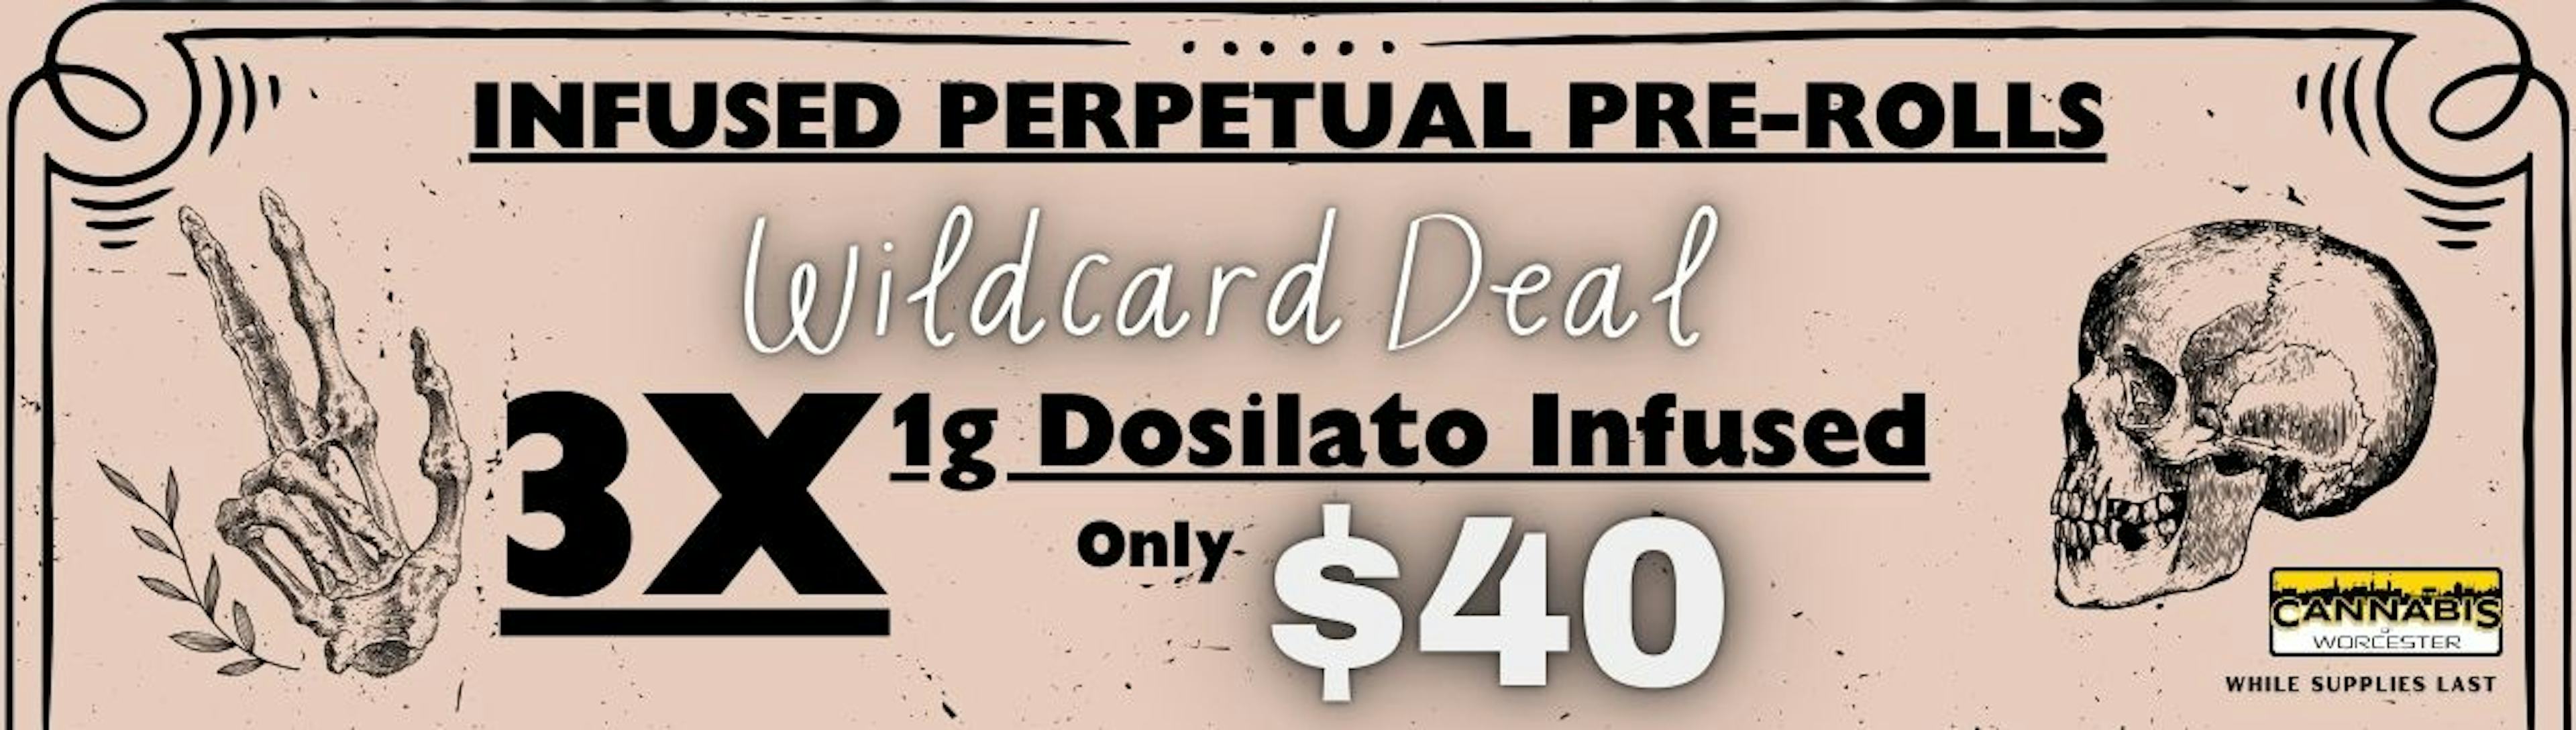 Dosilato 3x for $40